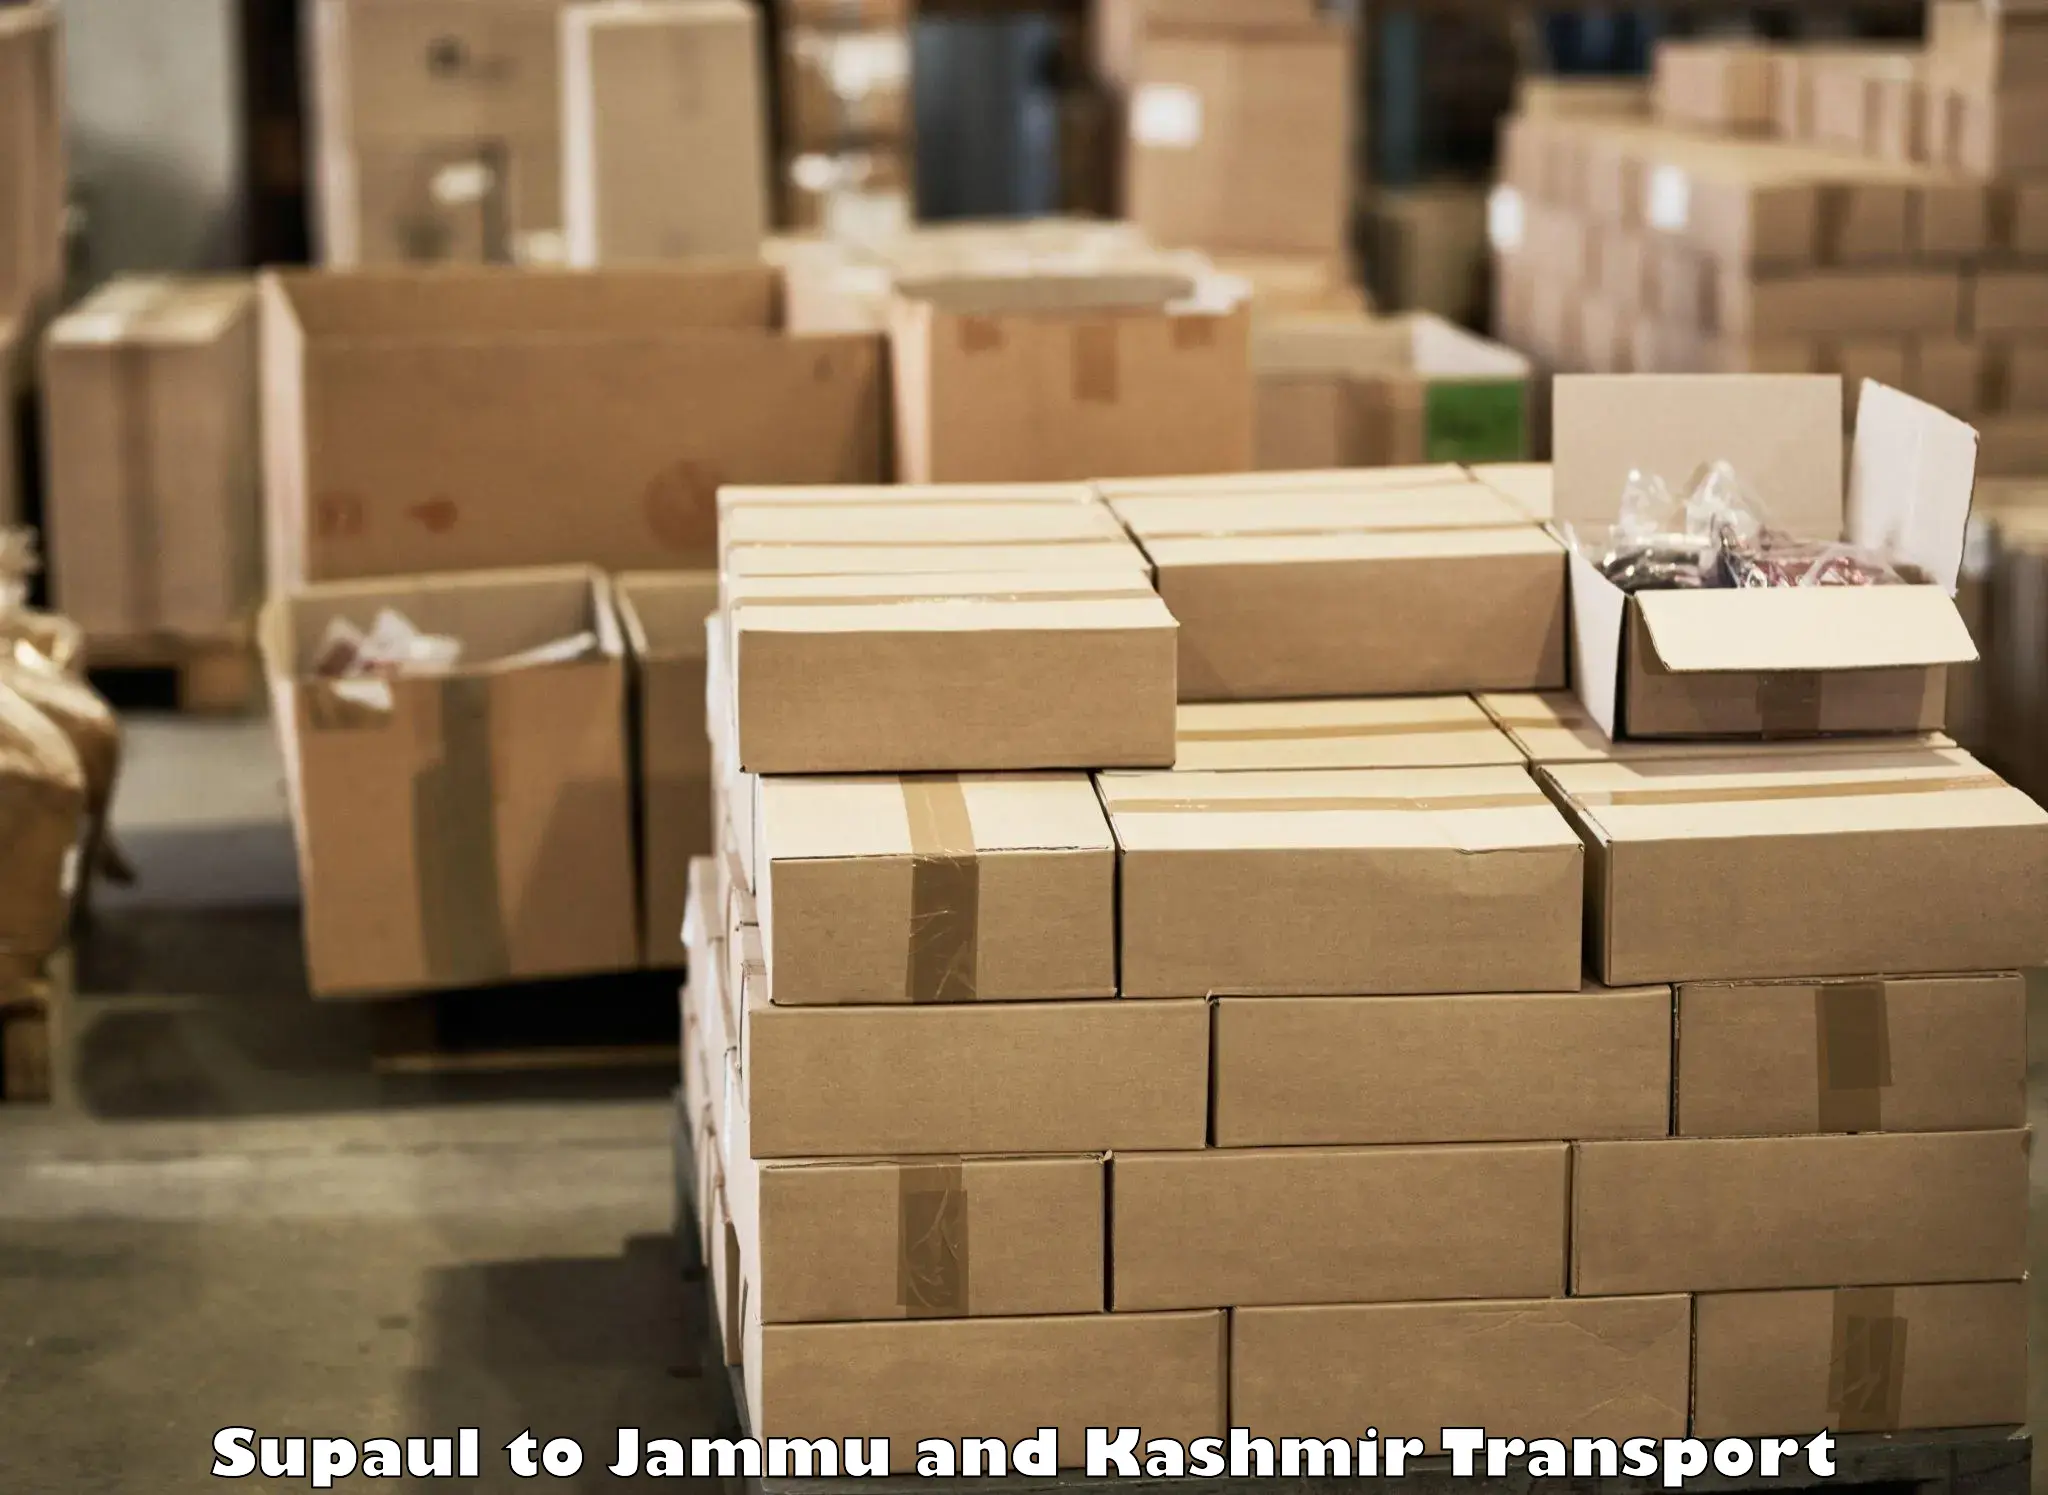 Shipping services Supaul to Srinagar Kashmir